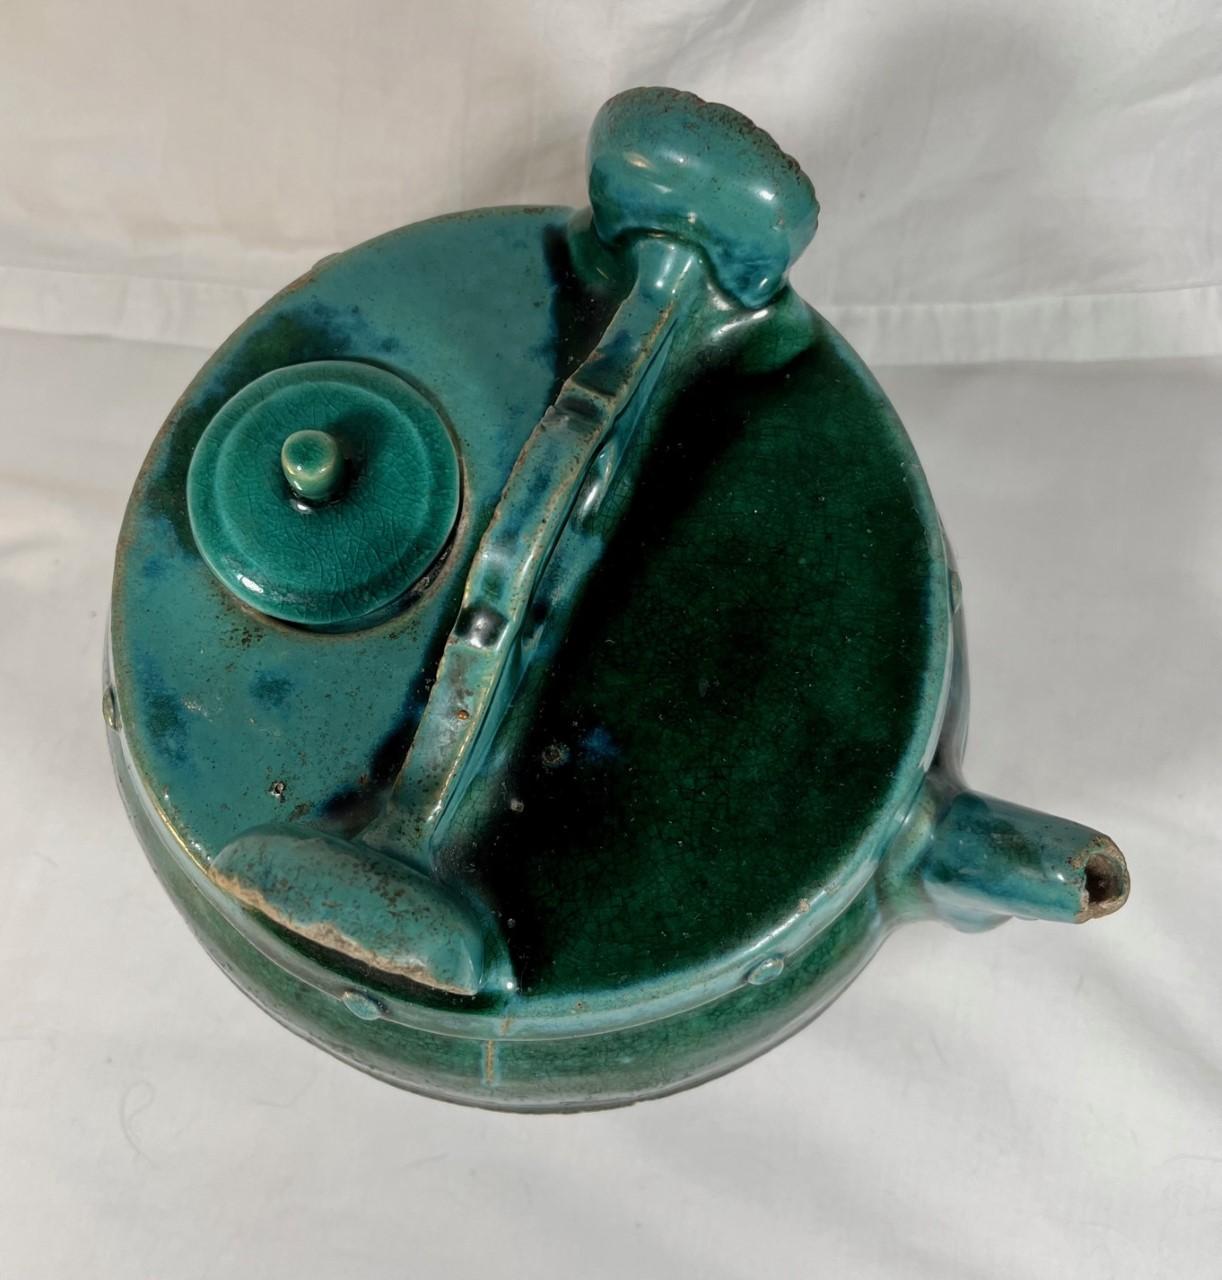 Die antike chinesische grün-blau glasierte Shiwan-Töpferware-Teekanne stammt aus der Kuang Hsu-Dynastie in China und ist aus dem späten 19. Der Topf mit der leuchtend grünen Glasur hat eine Ausgusstülle, einen Trage- oder Aufhängegriff und einen